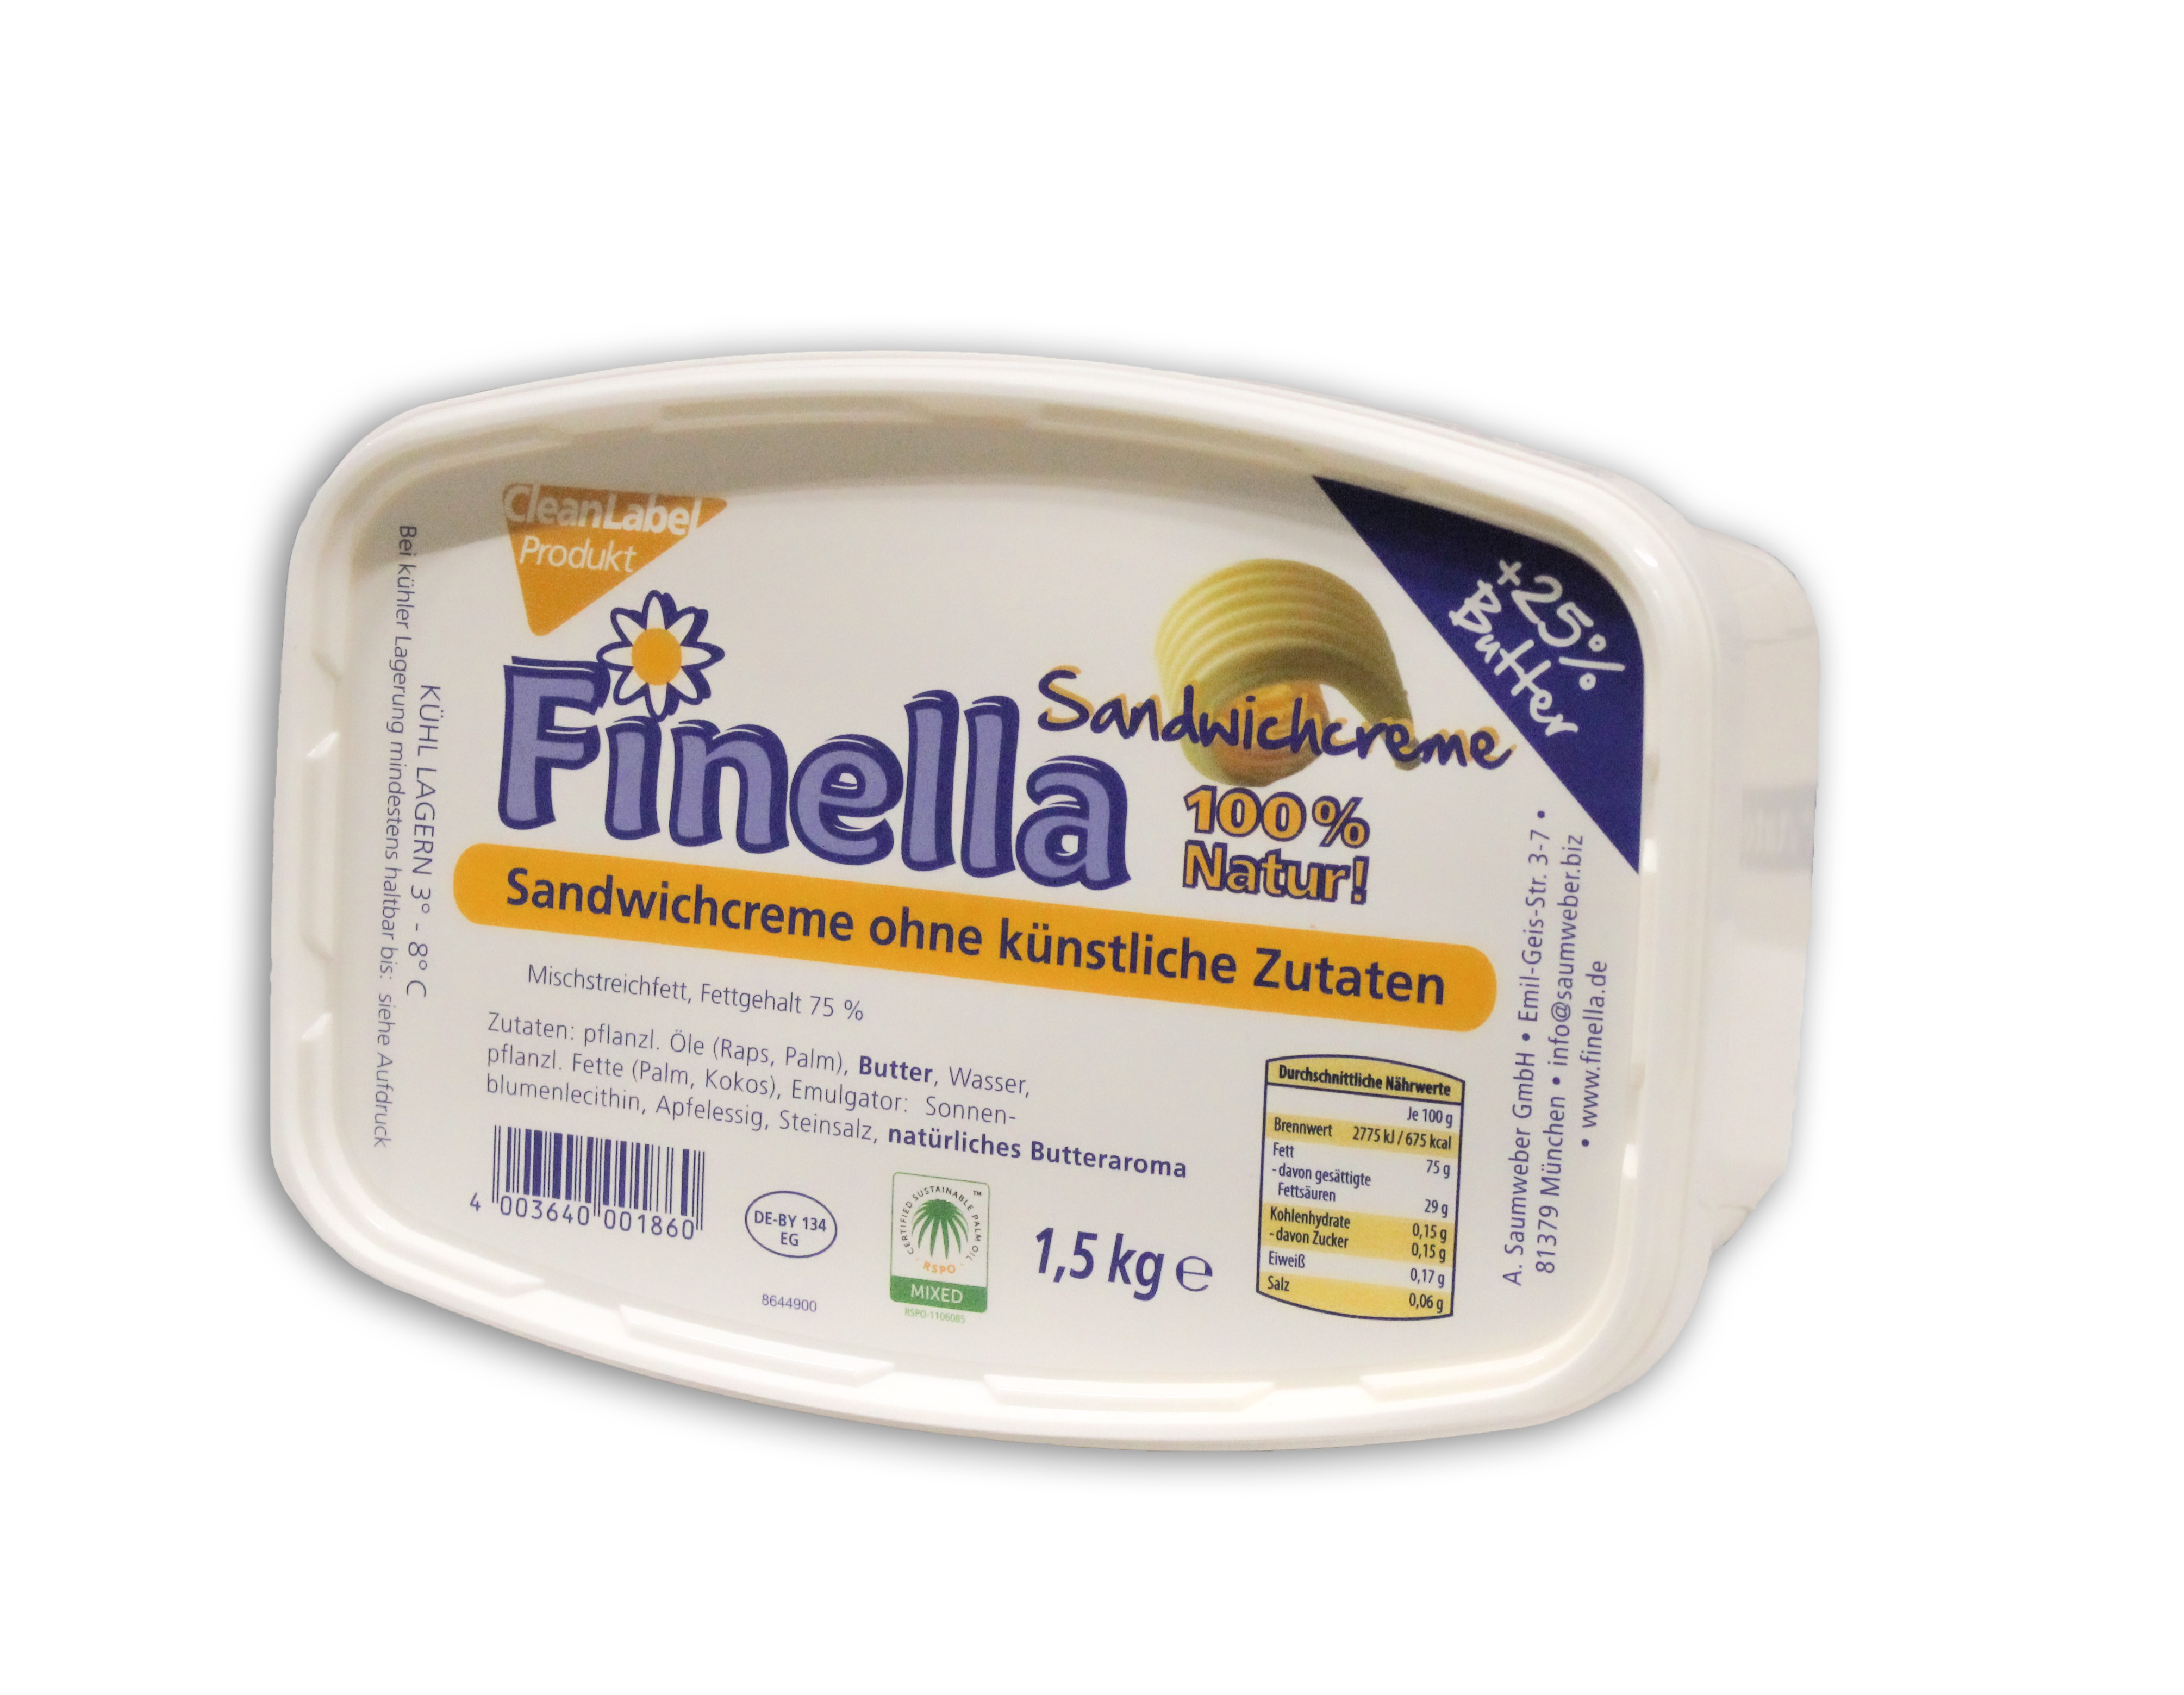 Finella Sandwichcreme 1,5kg